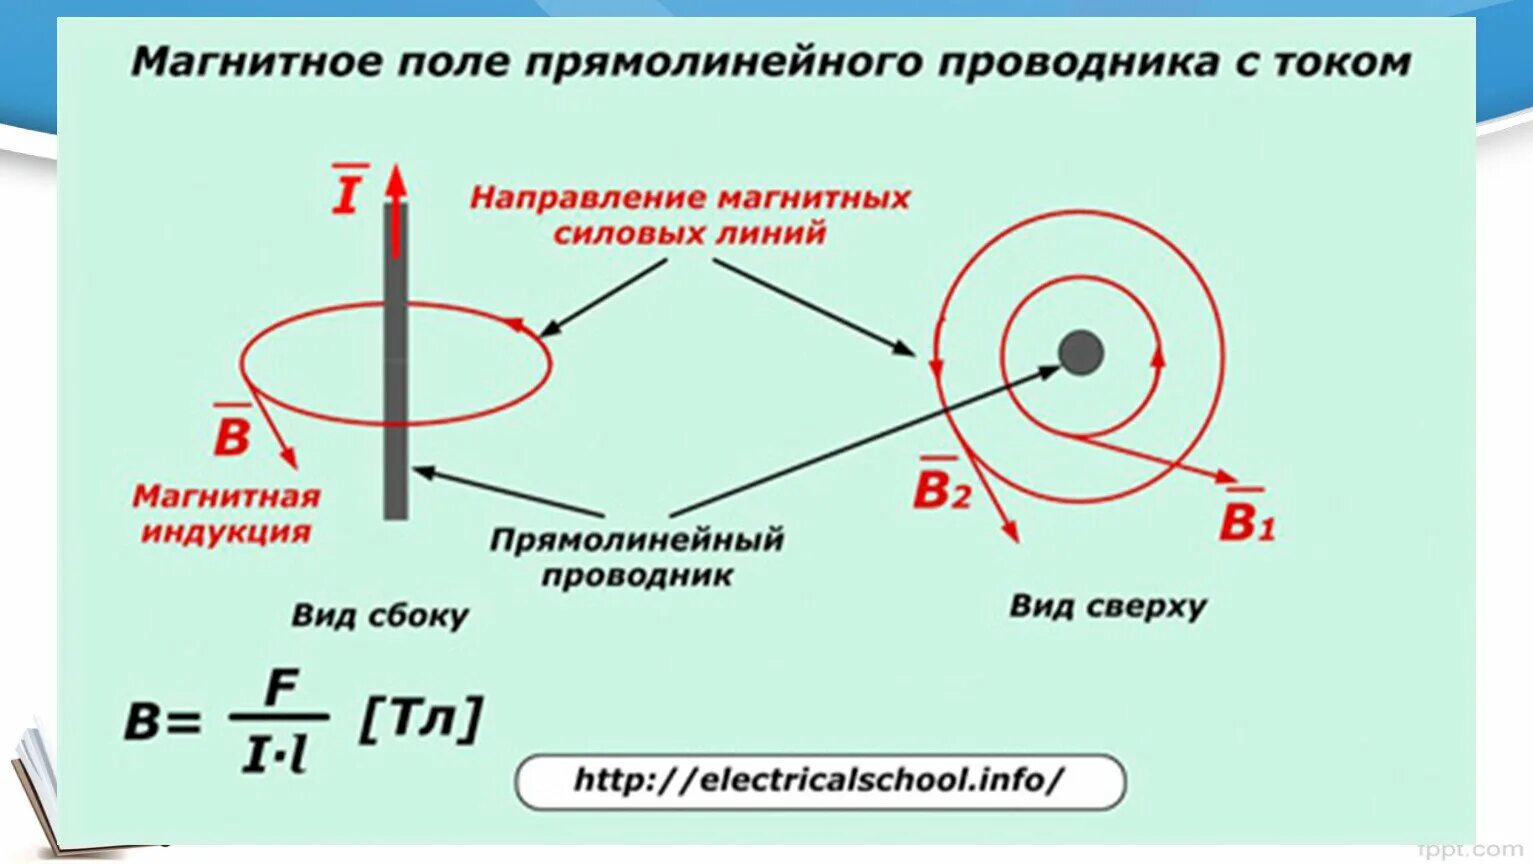 Как определить направление провода. Магнитное поле тока индукция магнитного поля. Магнитные силовые линии прямолинейного проводника.. Магнитное поле проводника с током кратко. Магнитная индукция прямолинейного проводника.